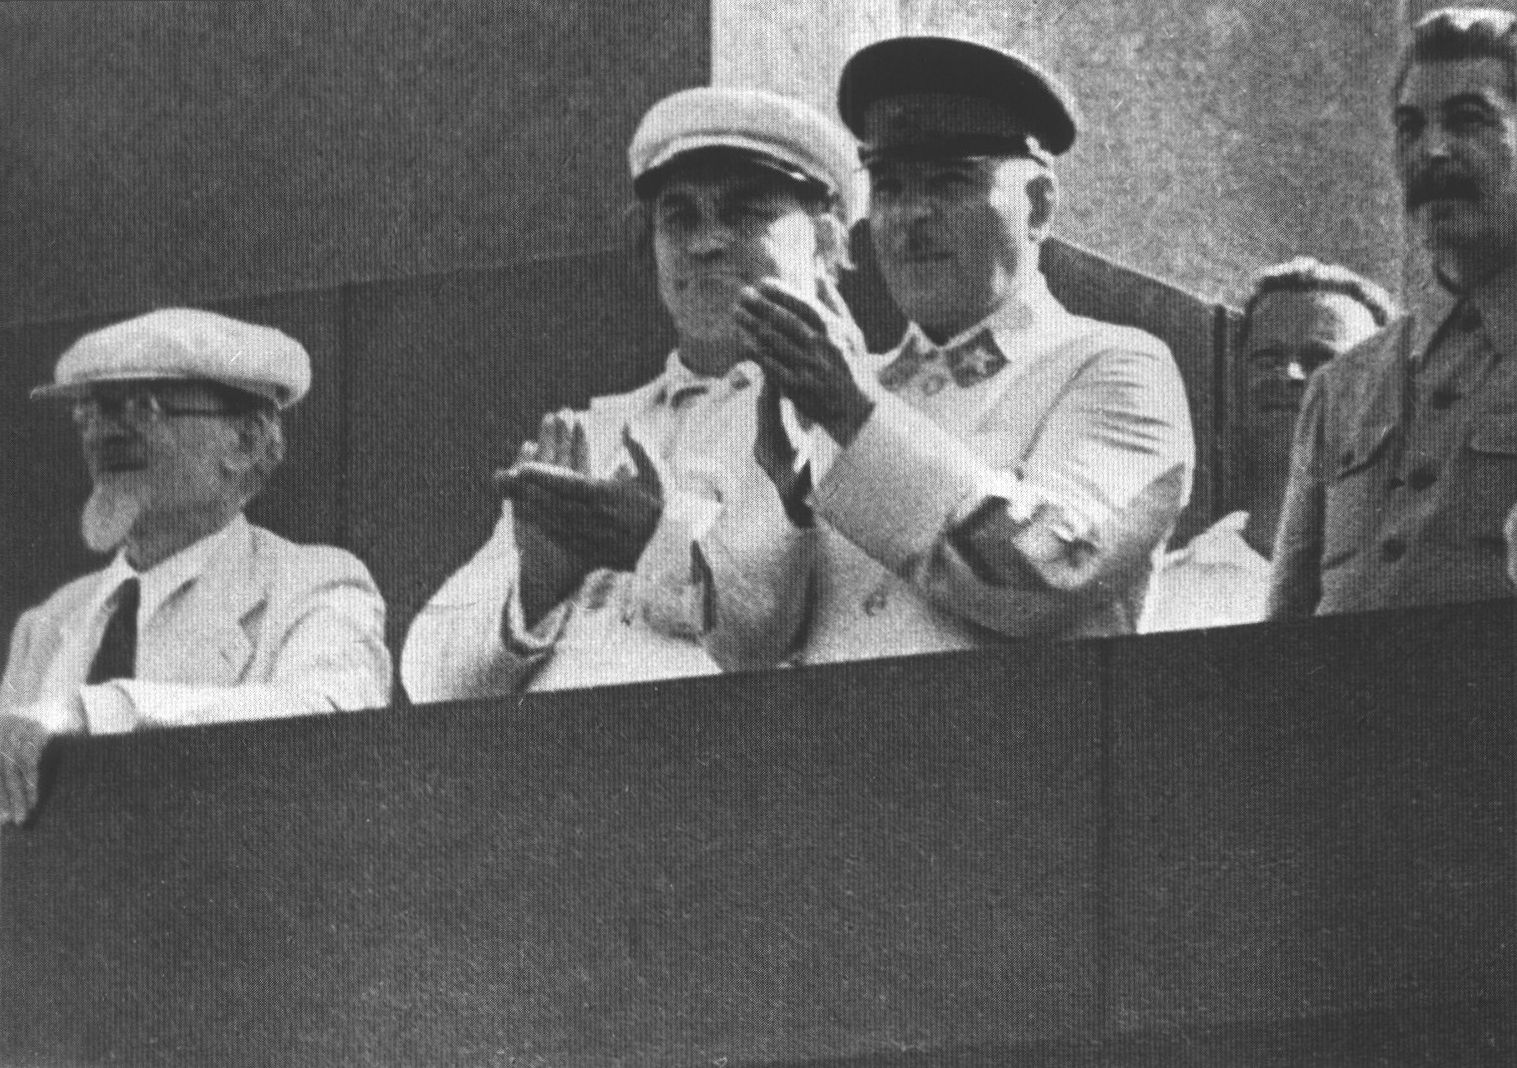 Михаил Калинин, Георгий Димитров, Климент Ворошилов, Иосиф Сталин на Мавзолее во время физкультурного парада. 1936 г.